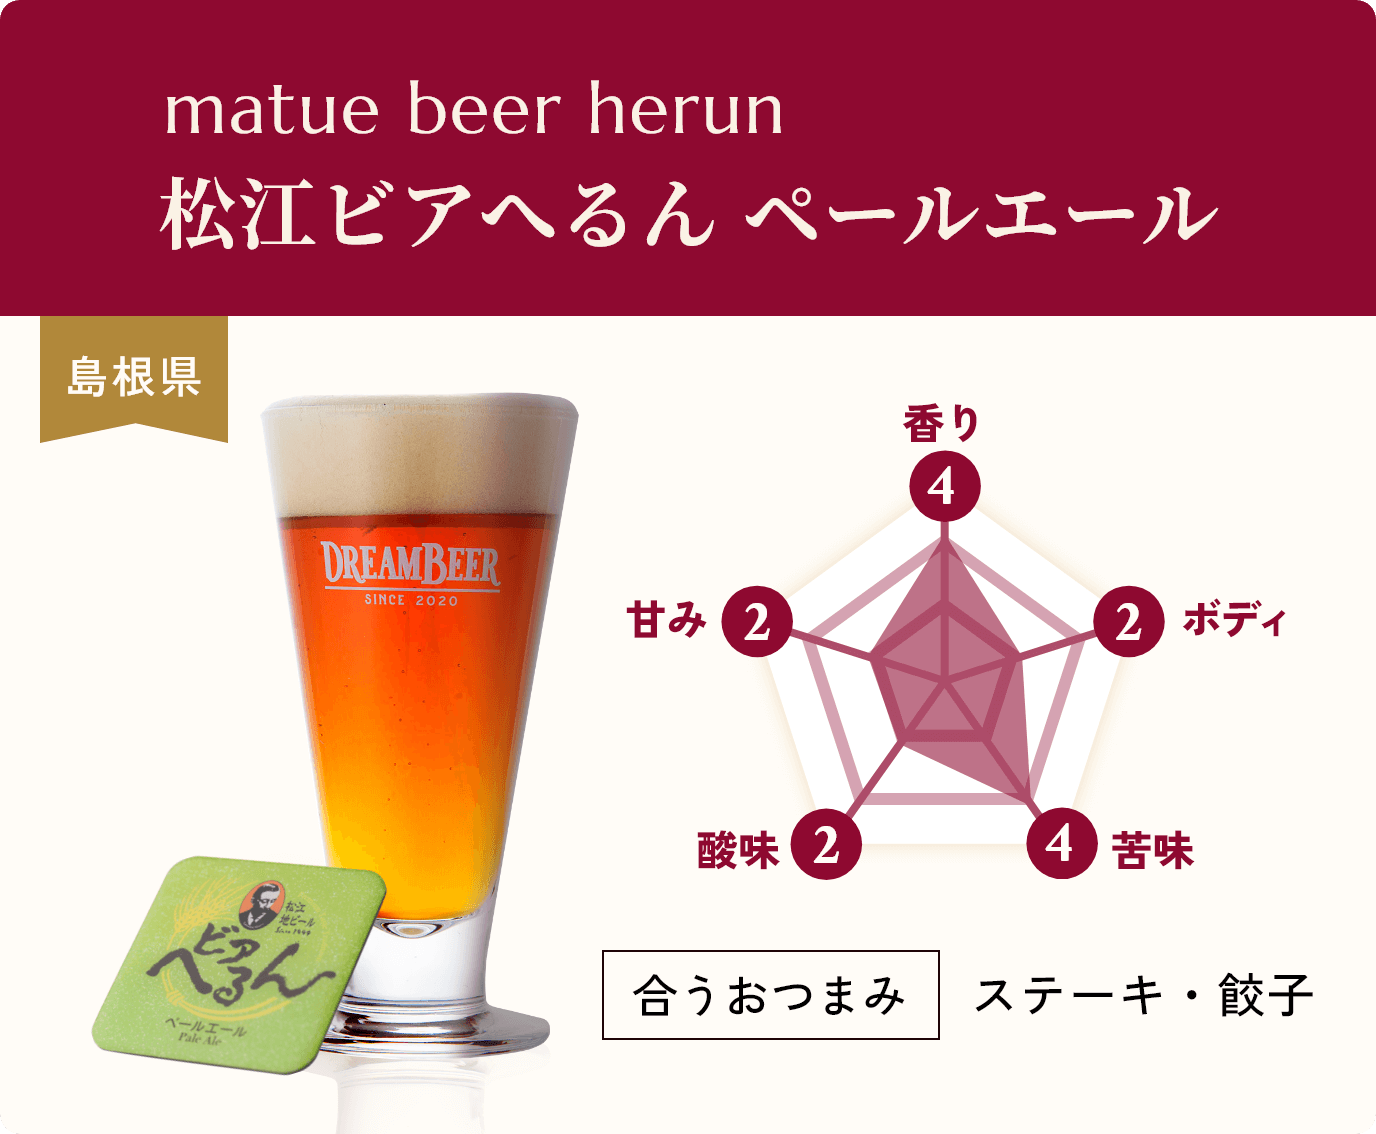 matue beer herun,松江ビアへるん ペールエール